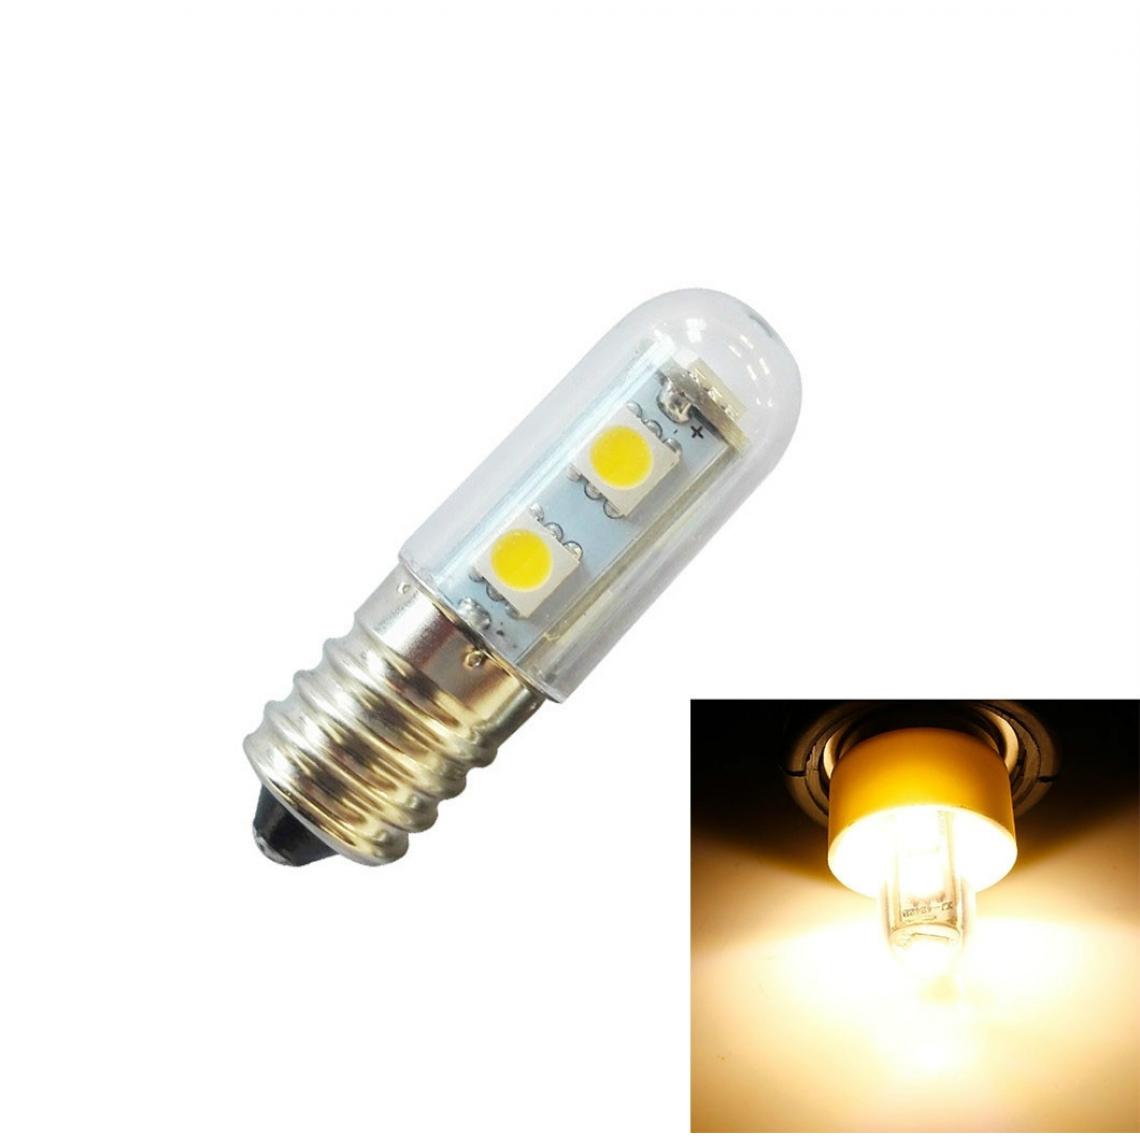 Wewoo - E14 vis lumière LED ampoule de réfrigérateur 1W 220V AC 7 SMD 5050 ampères maison Warm White - Ampoules LED